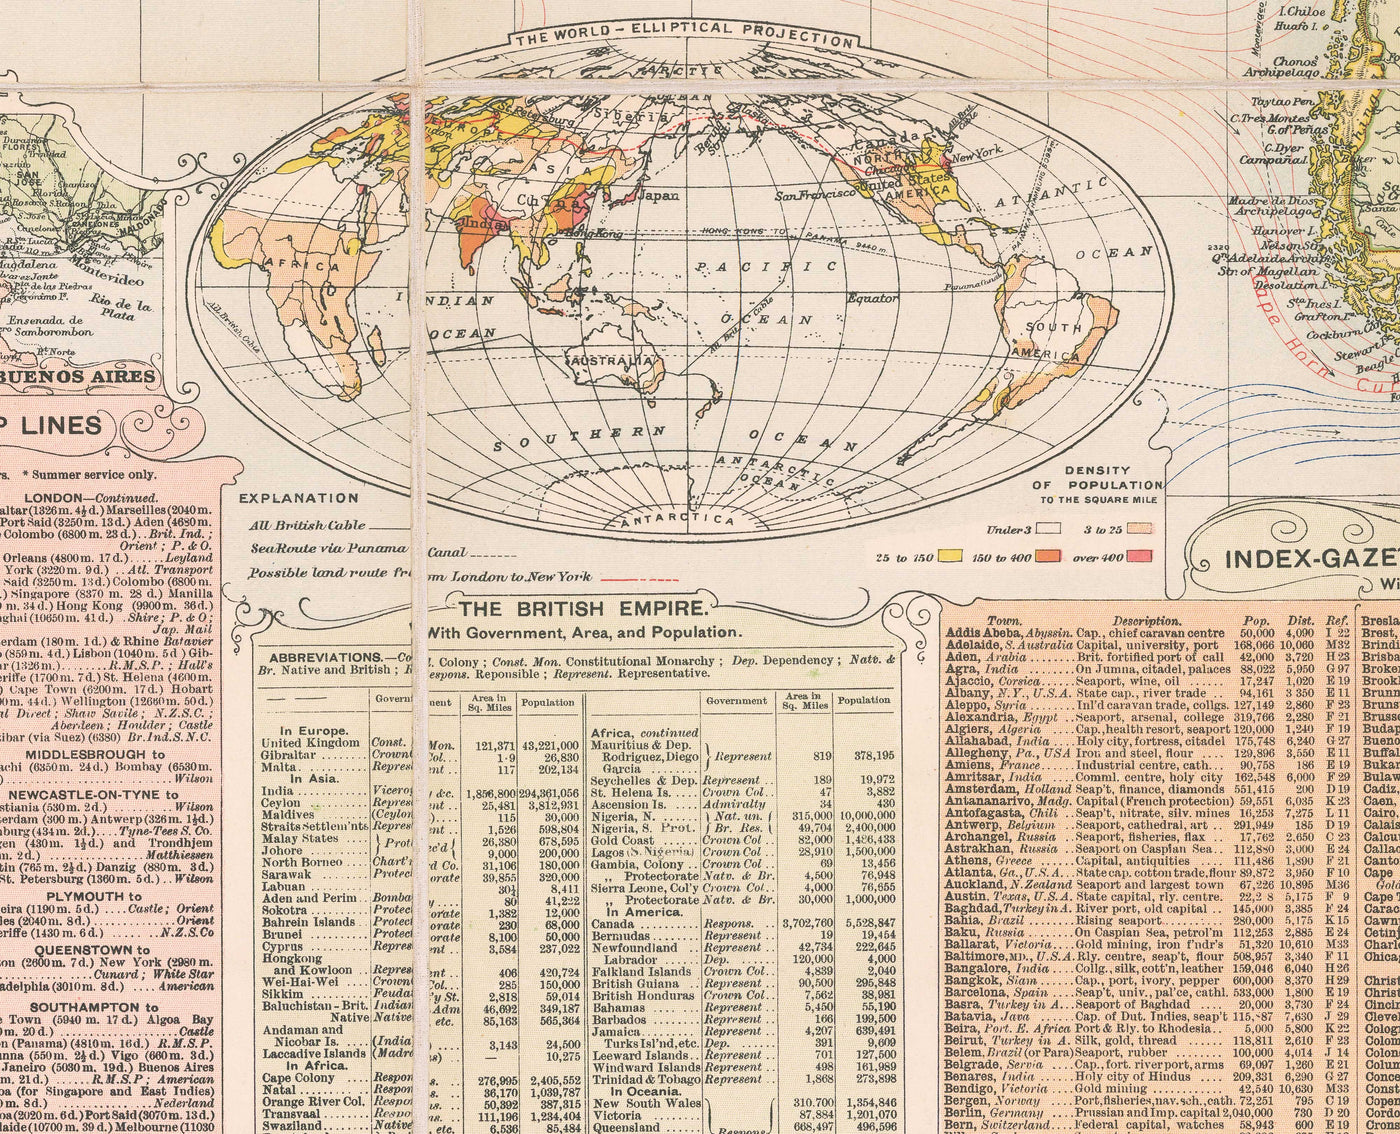 Alte Weltkarte von Bacon, 1908 - Großer seltener Atlas - Schifffahrtswege, Handelsmarine, Eisenbahnen, britisches Empire